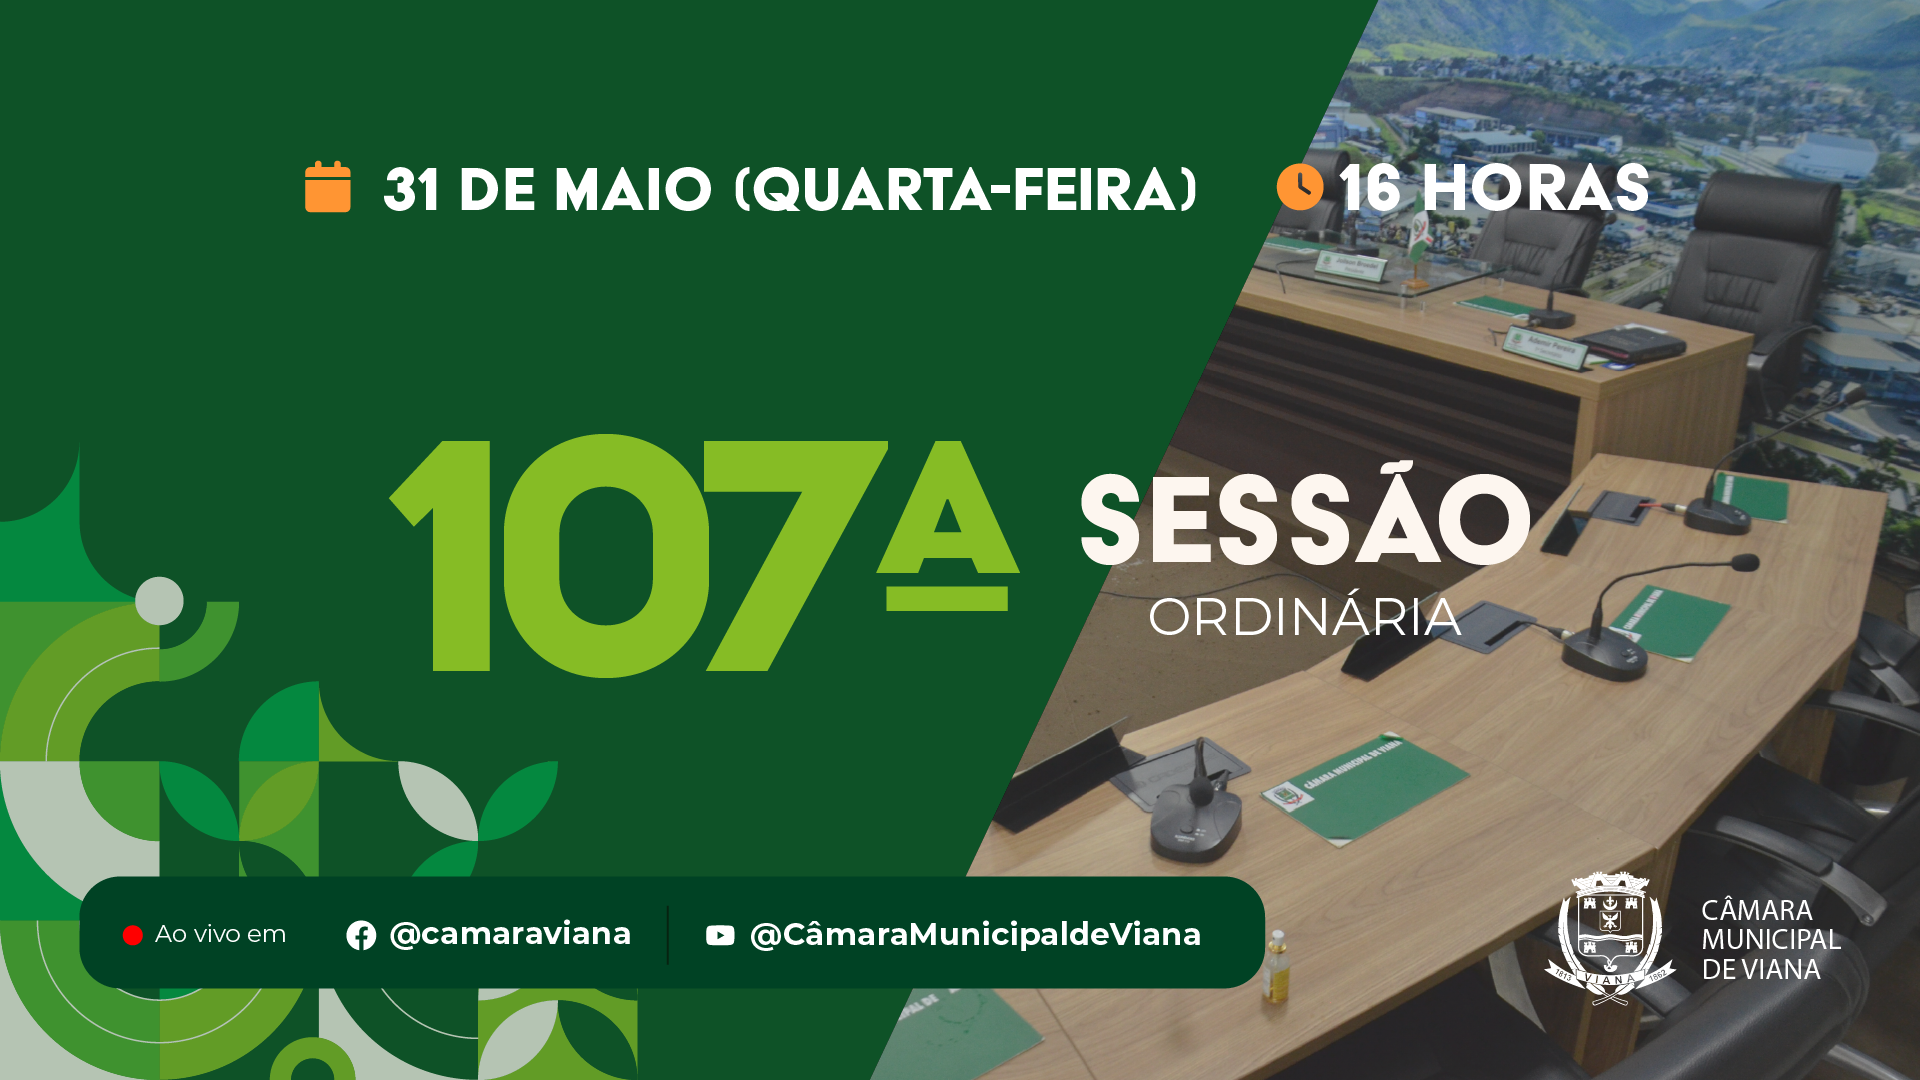 Notícia: PAUTA DA CENTÉSIMA SÉTIMA (107ª) SESSÃO ORDINÁRIA 